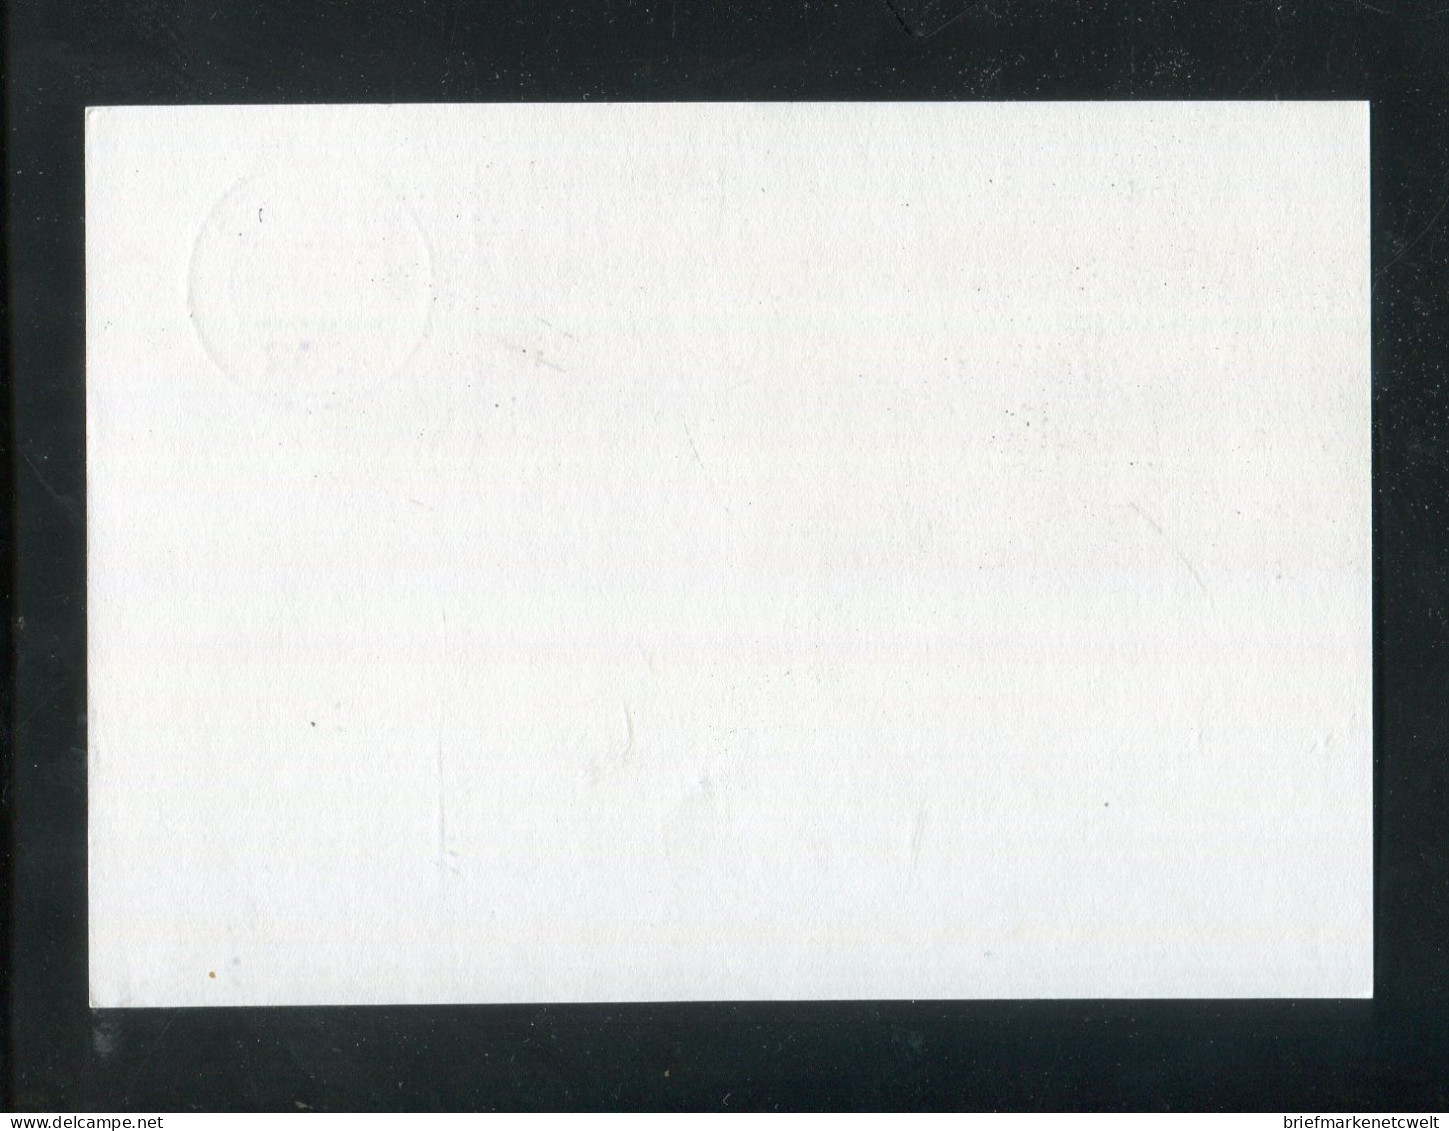 "BUNDESREPUBLIK DEUTSCHLAND" 1980, Bildpostkarte Mit Bildgleichem Stempel Ex "ALSFELD" (B0063) - Bildpostkarten - Gebraucht